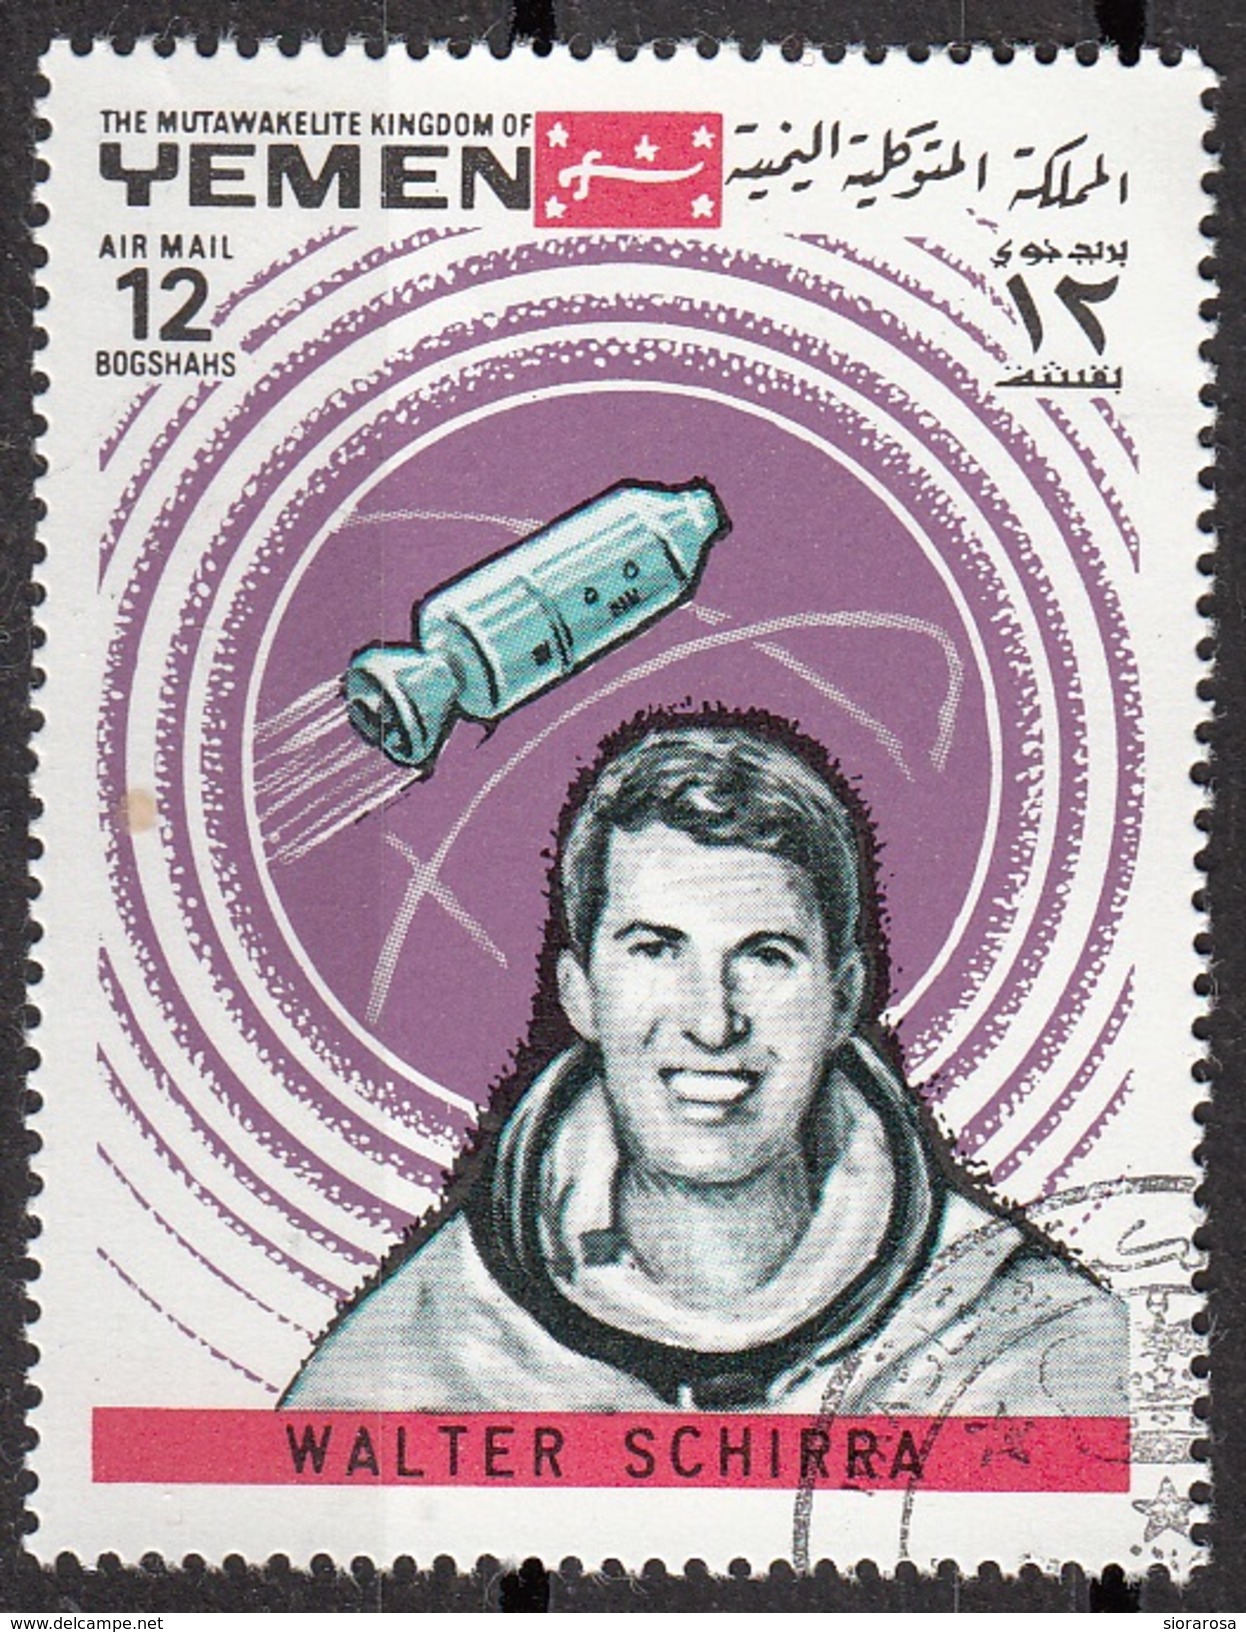 647 Mutawakelite K. Yemen 1969 W. Schirra Cosmonauta Space Mercury Gemini Apollo Nuovo Preoblit. - USA